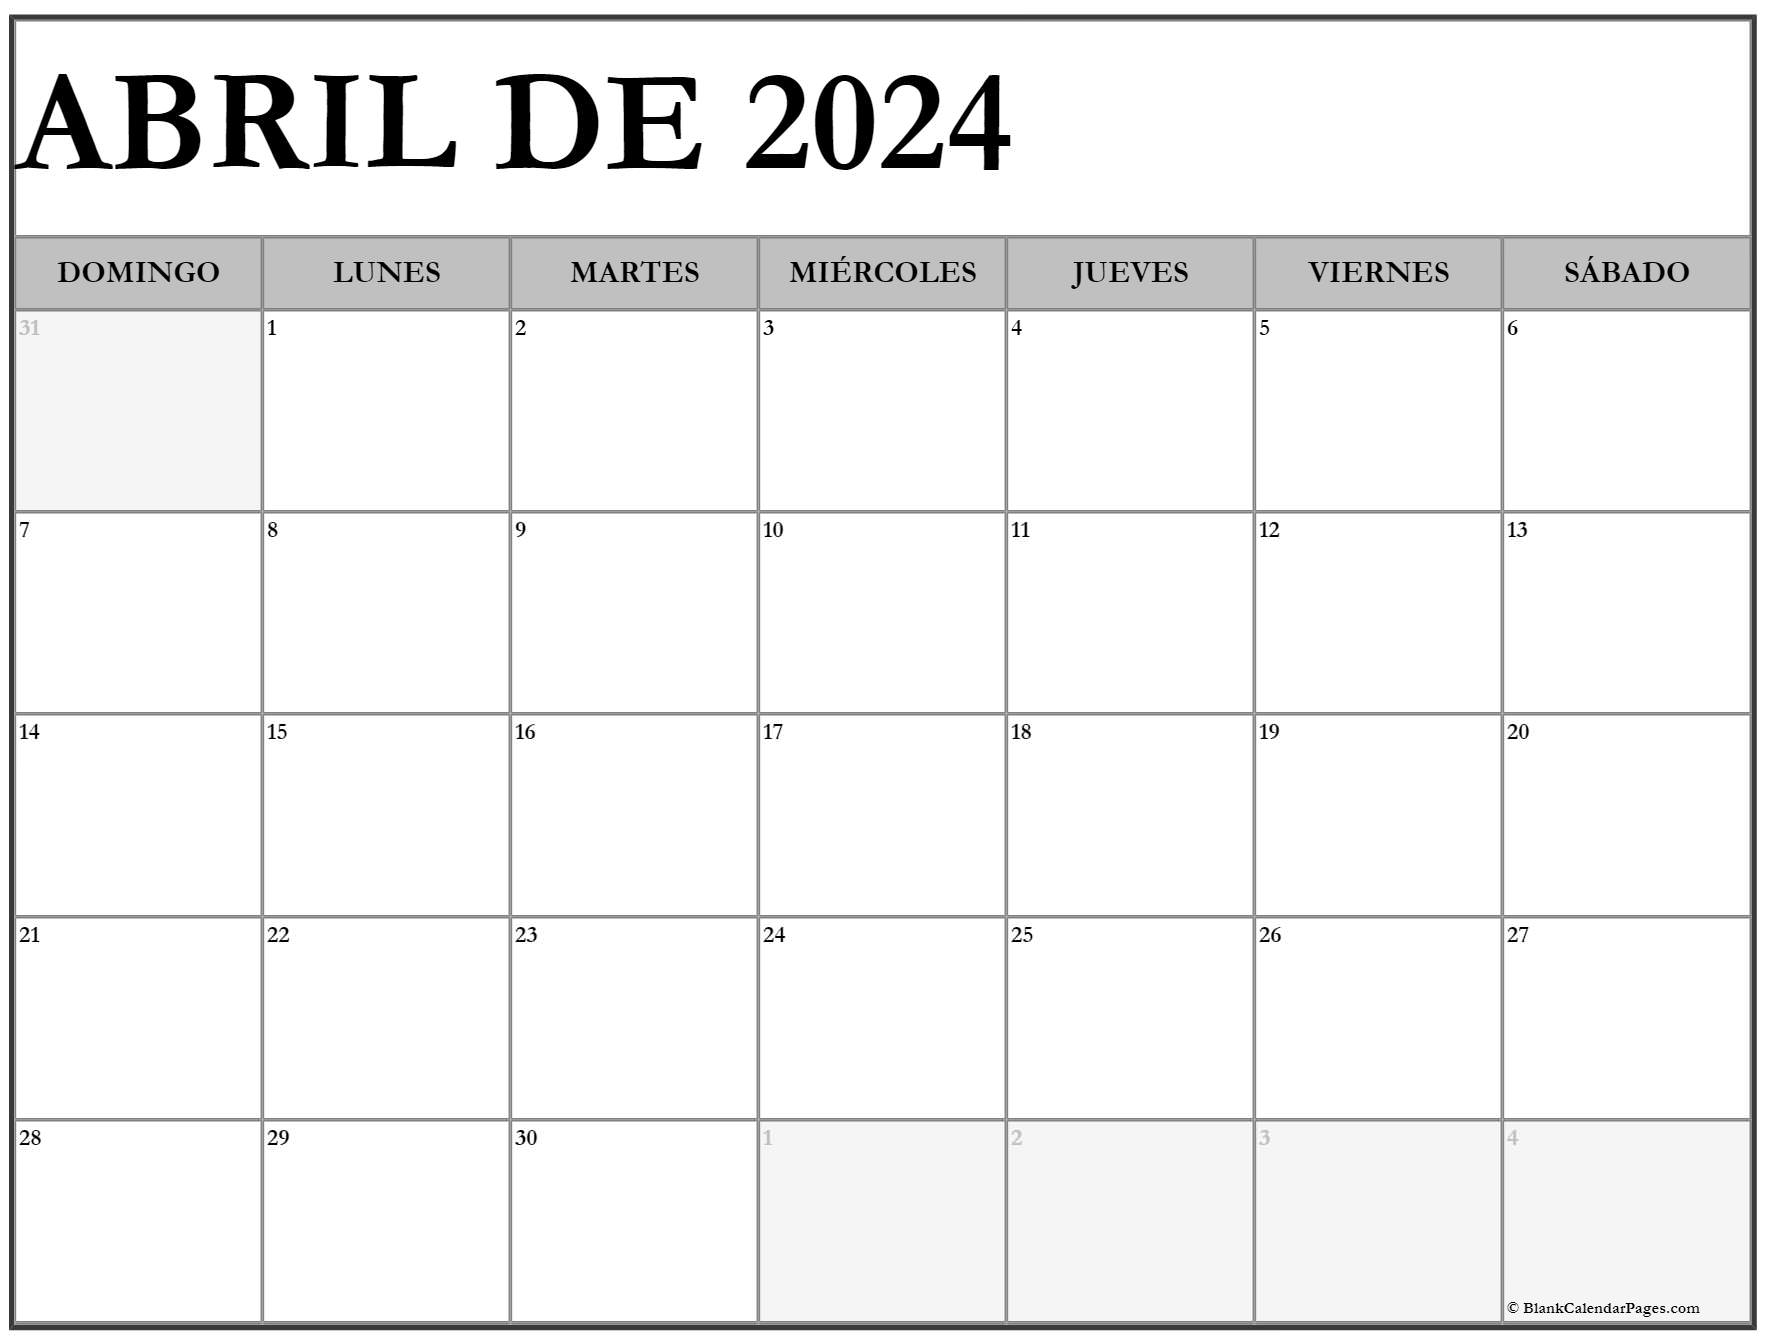 abril de 2024 calendario gratis Calendario abril